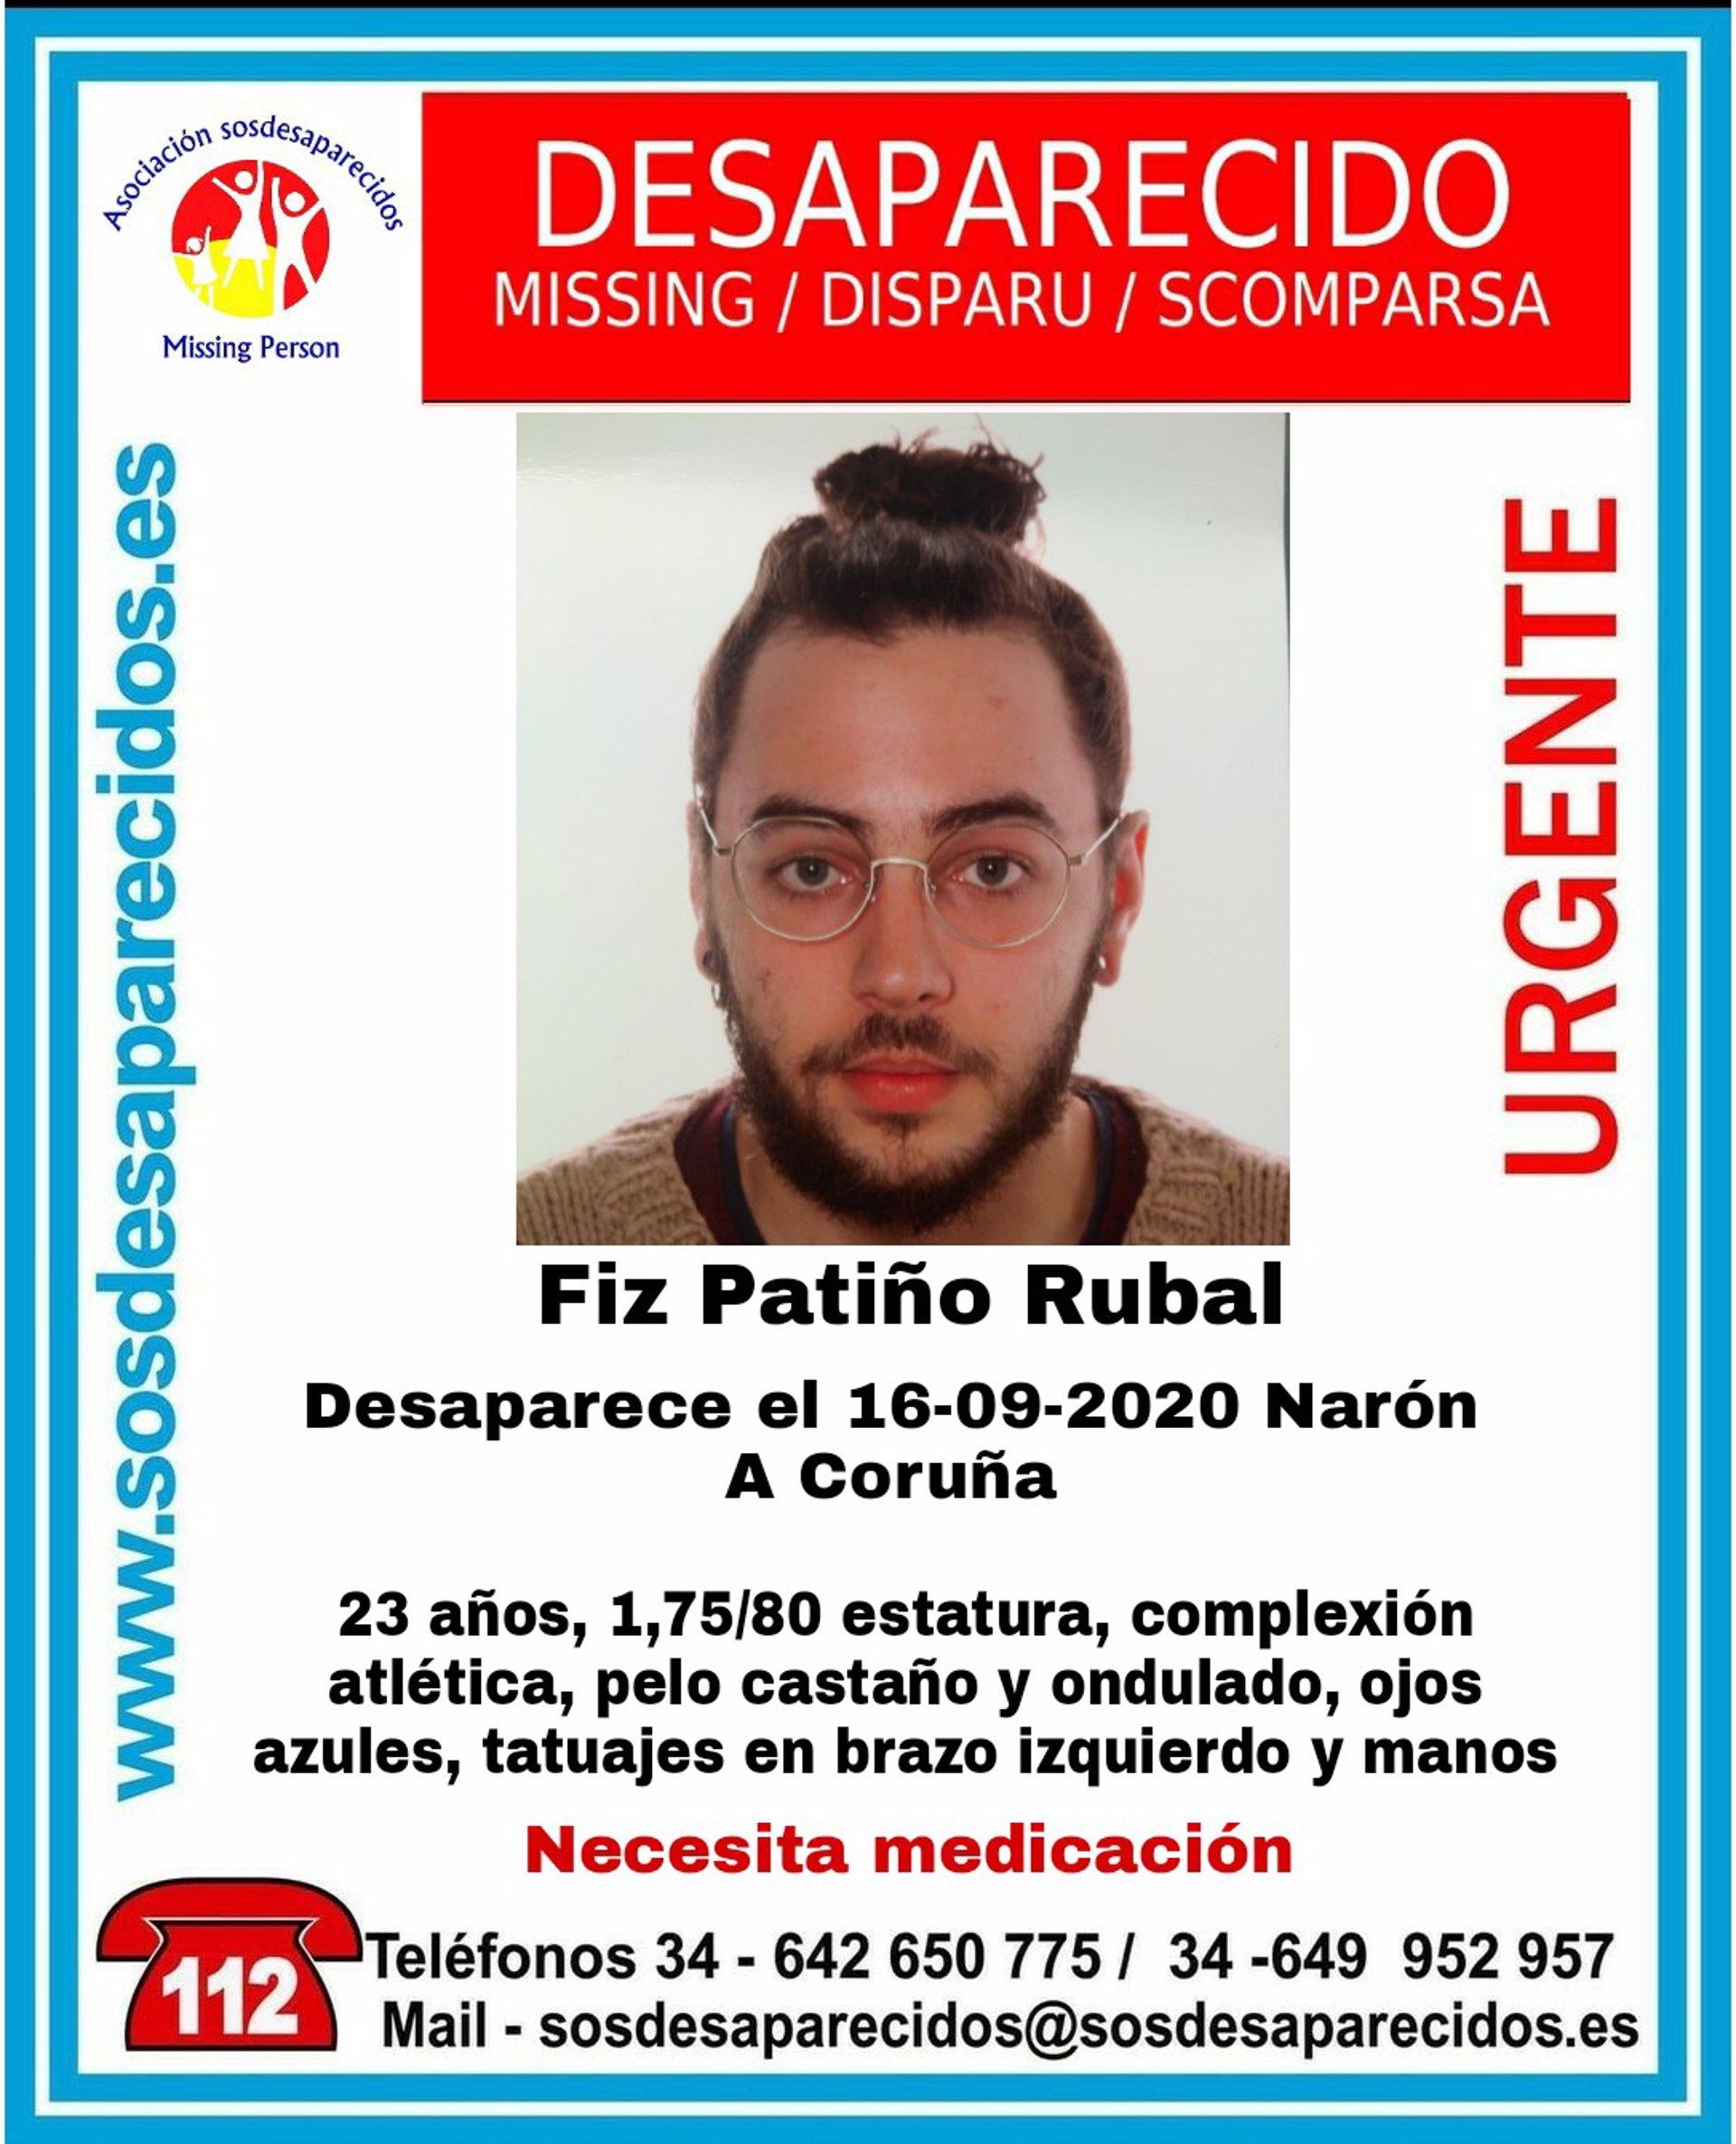 Fiz Patiño Rubal, en paradero desconocido desde el 16 de septiembre (SOS Desaparecidos).